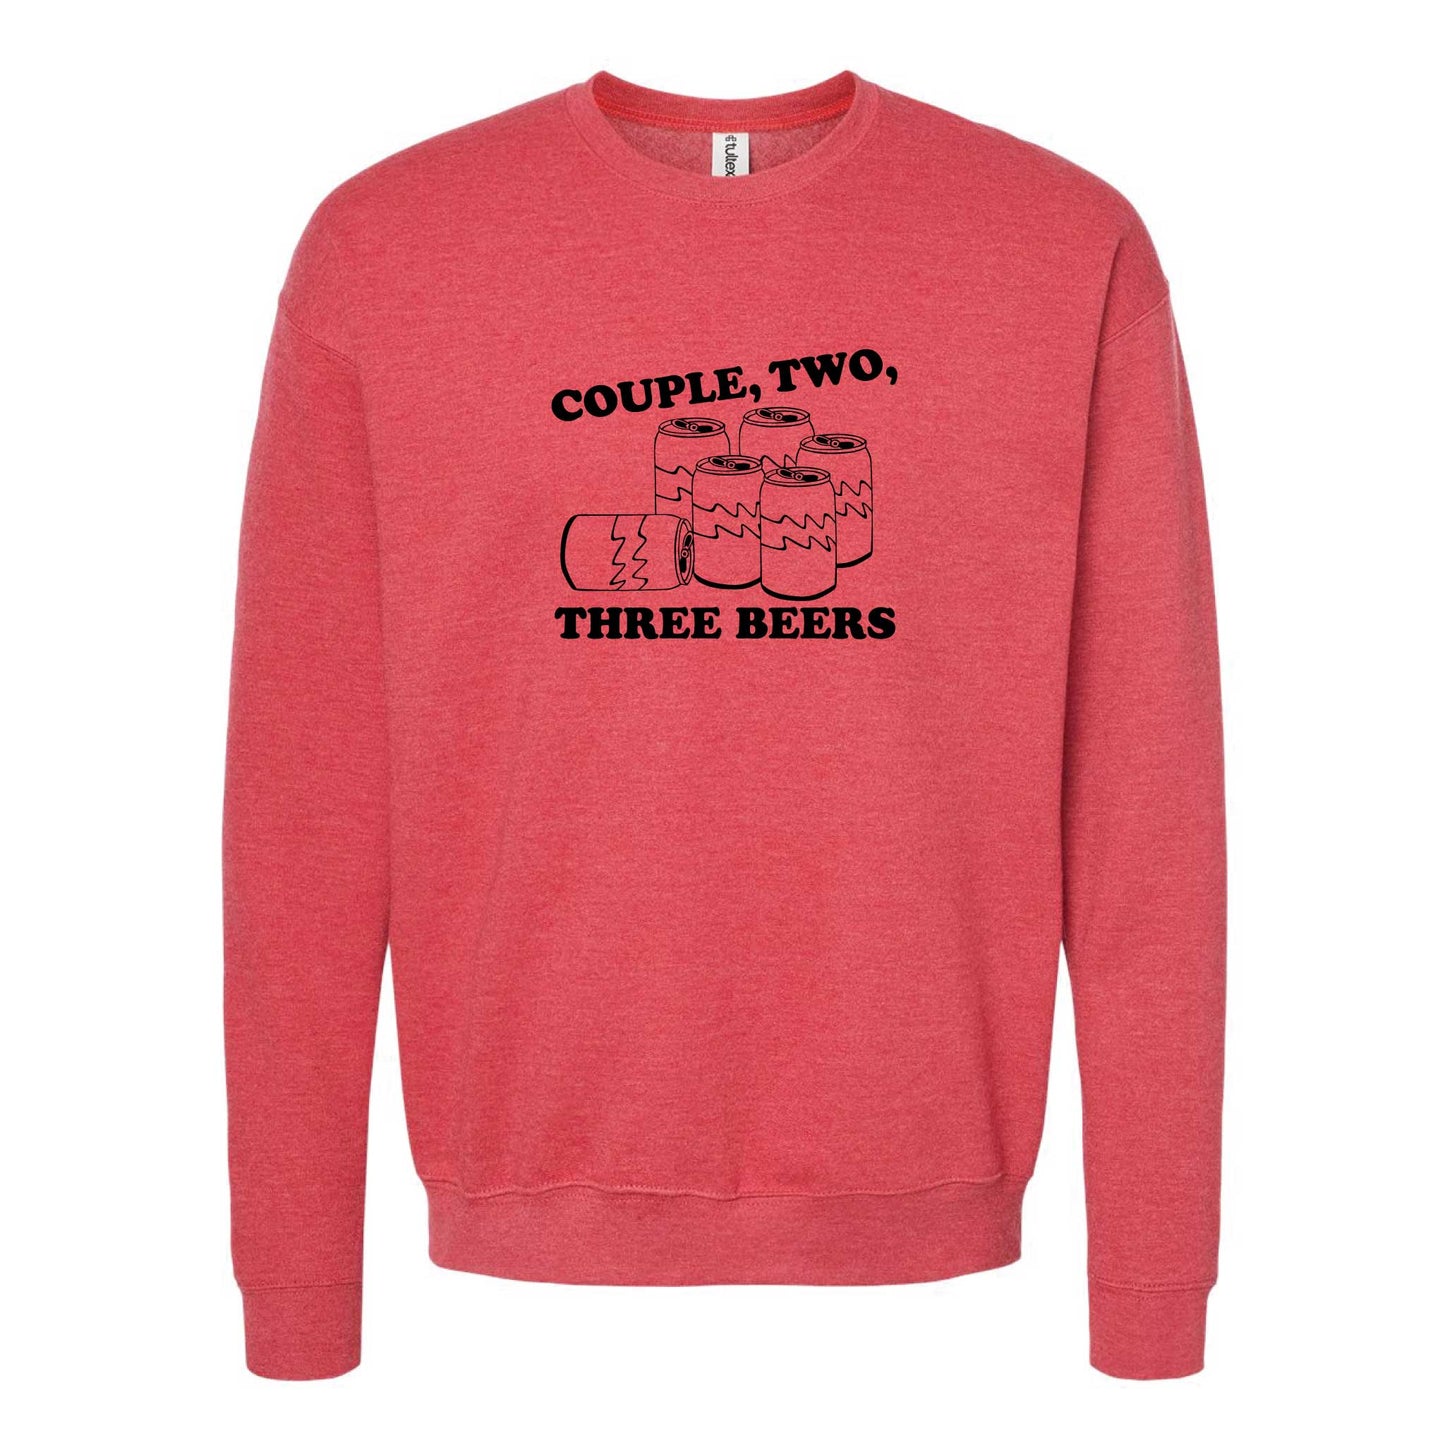 Couple, Two, Three Beers Crewneck Sweatshirt